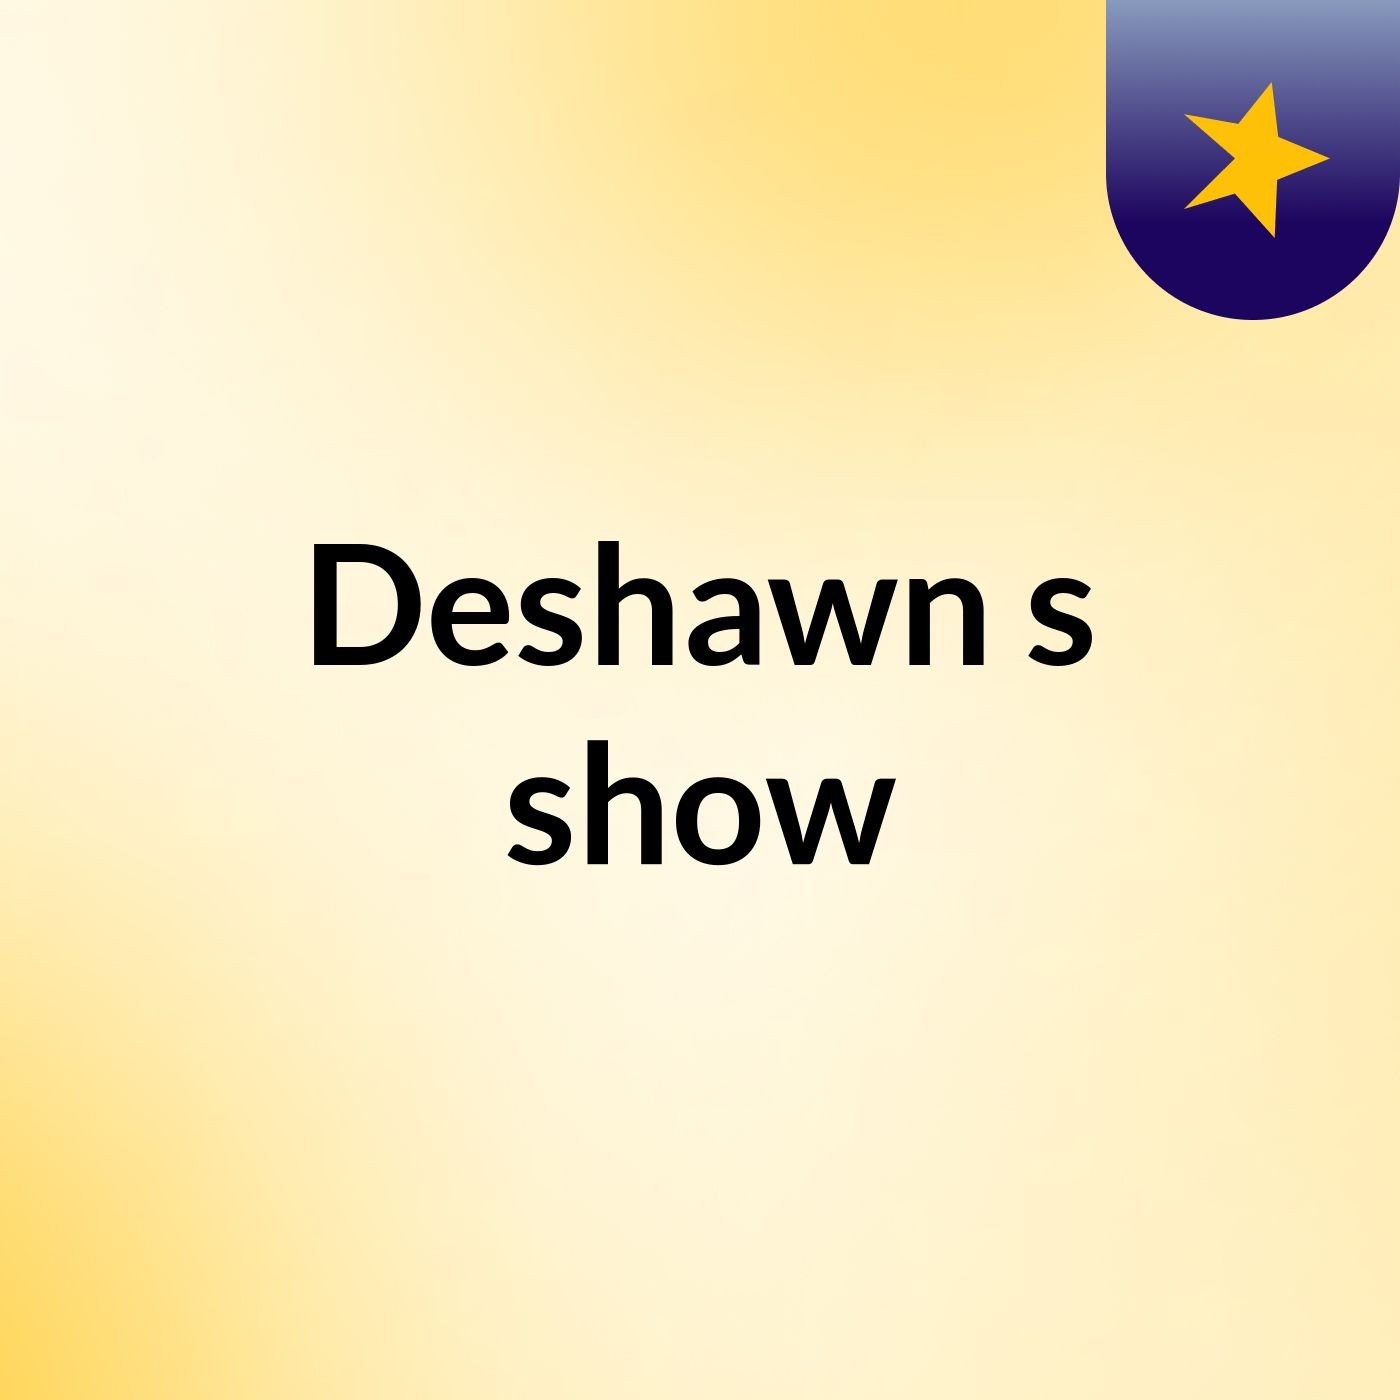 Episode 3 - Deshawn's show